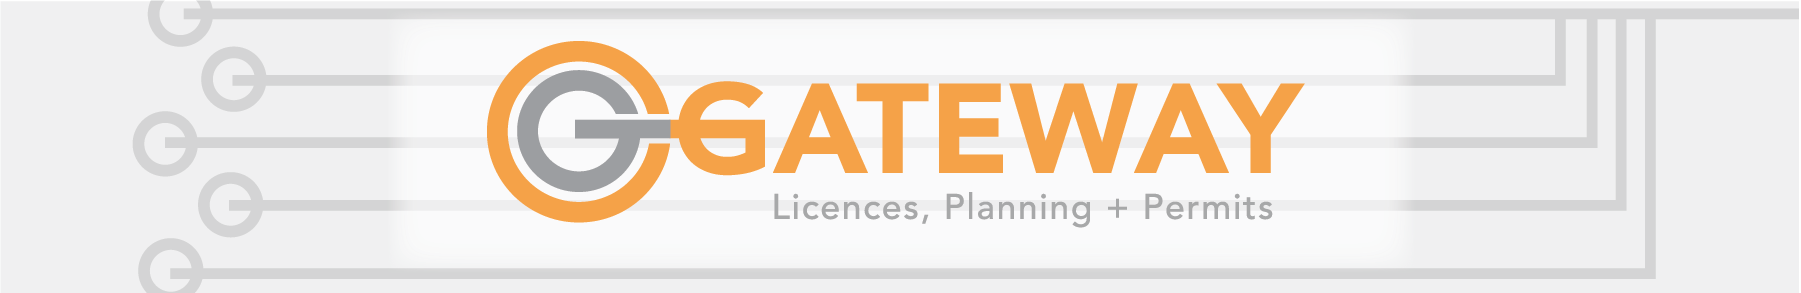 Gateway banner